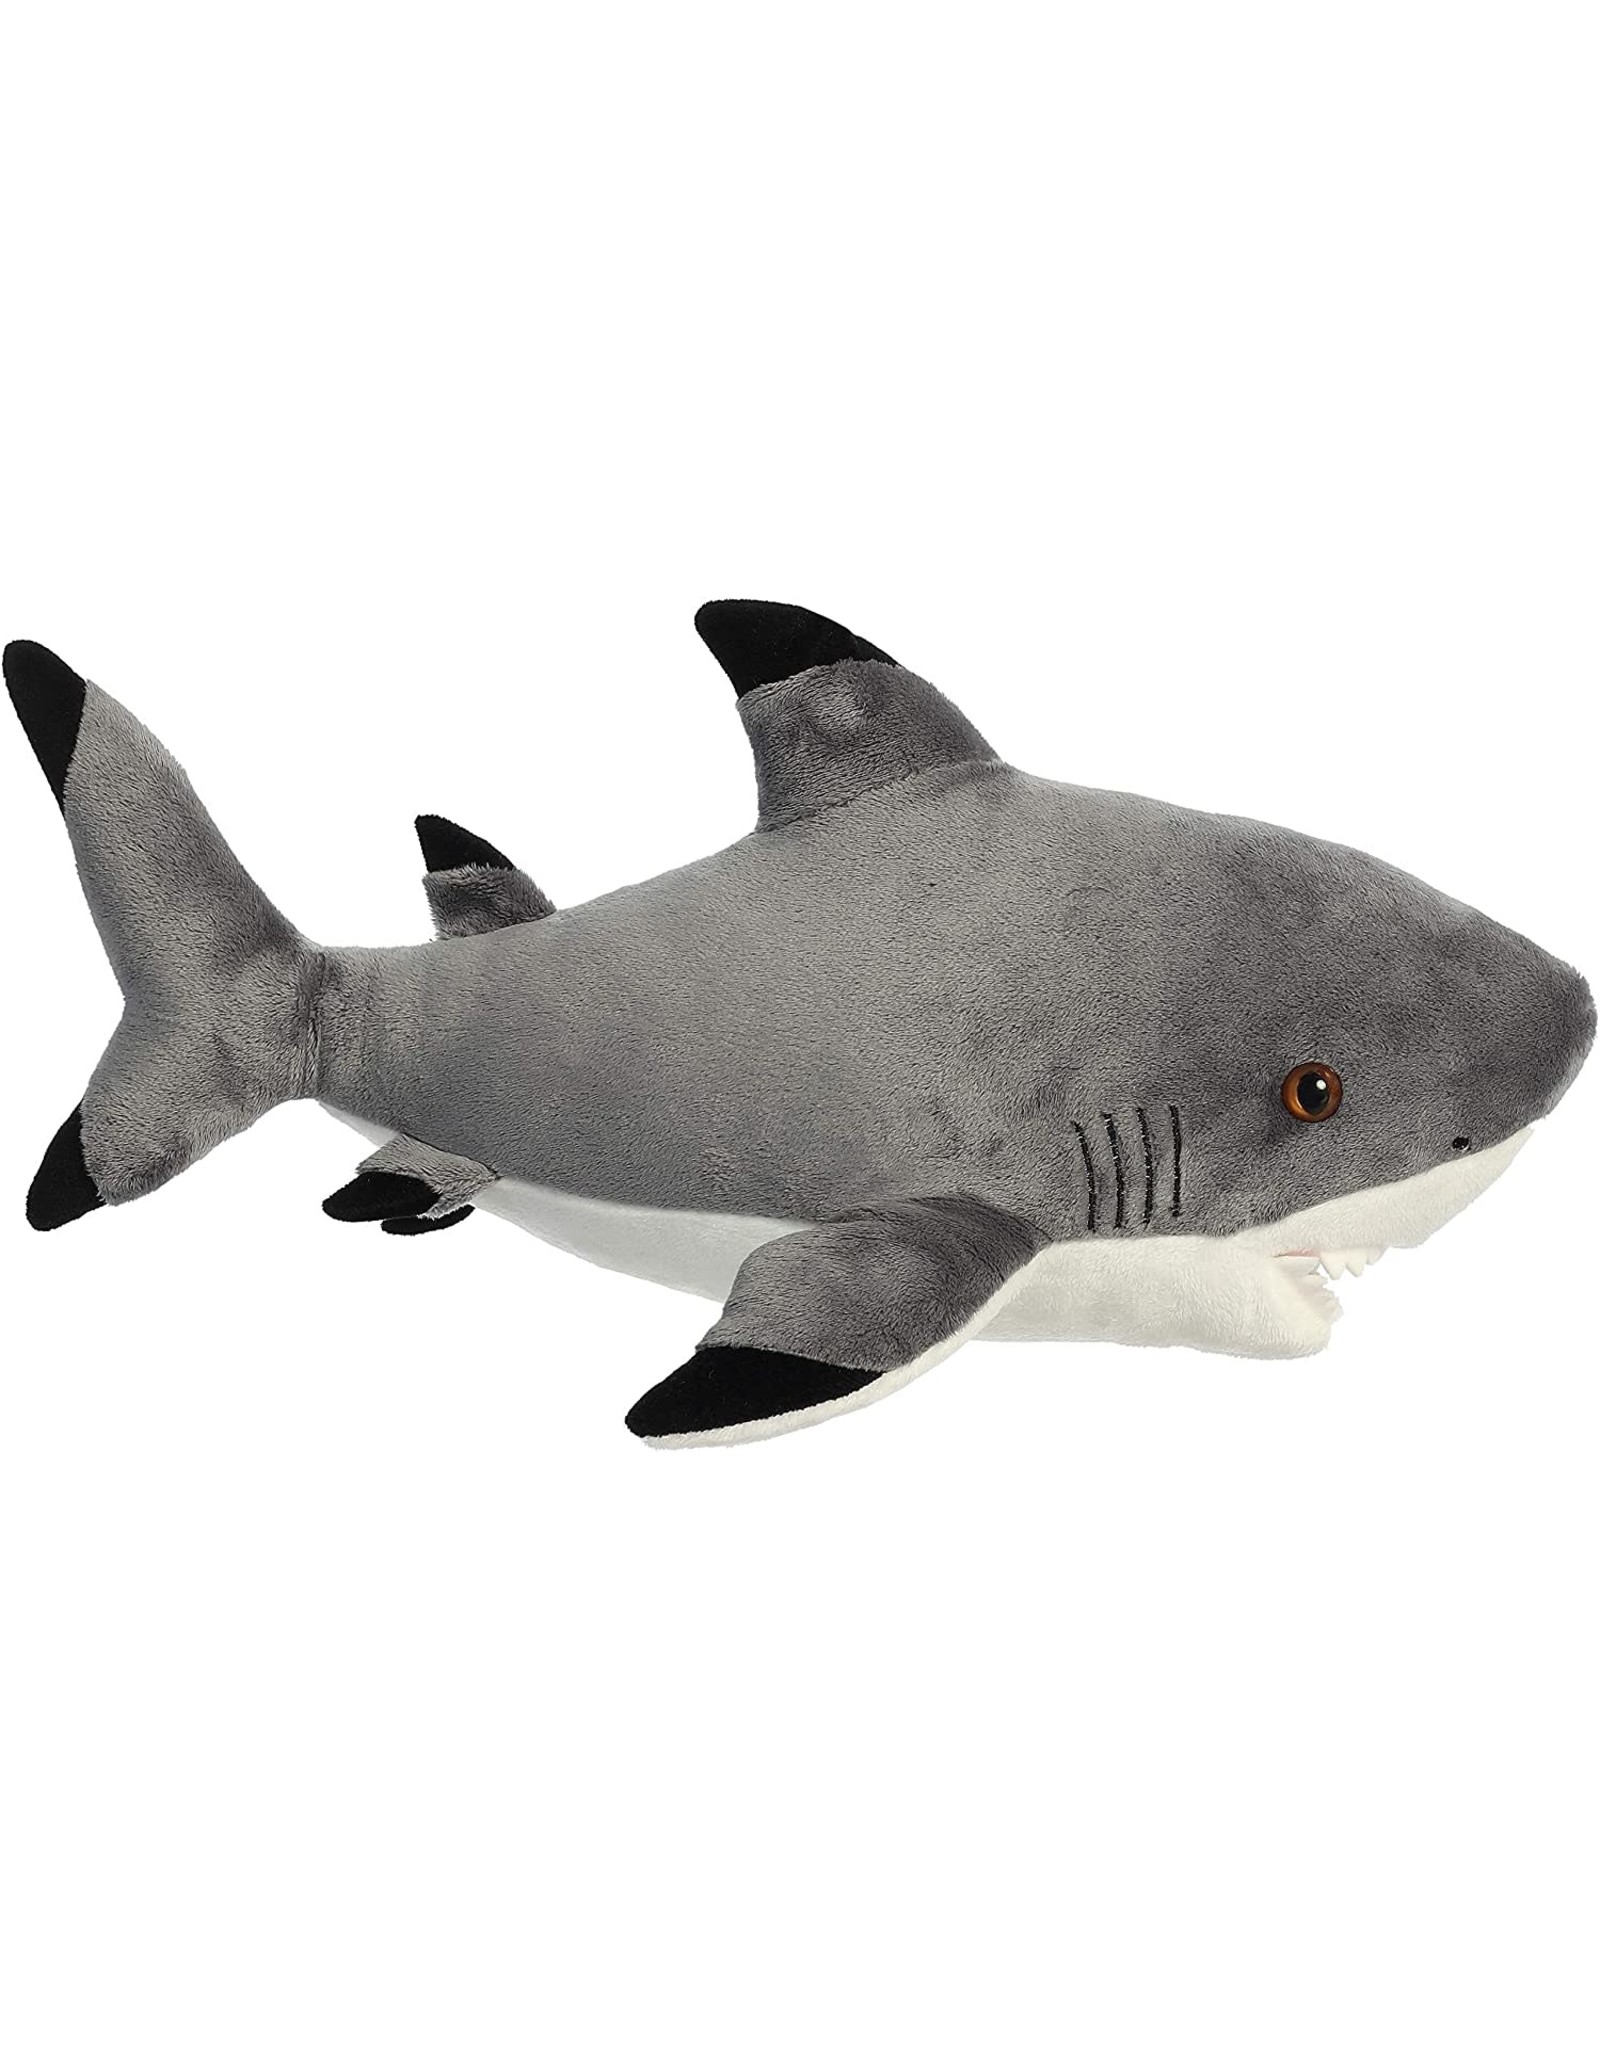 16" Blacktip Shark